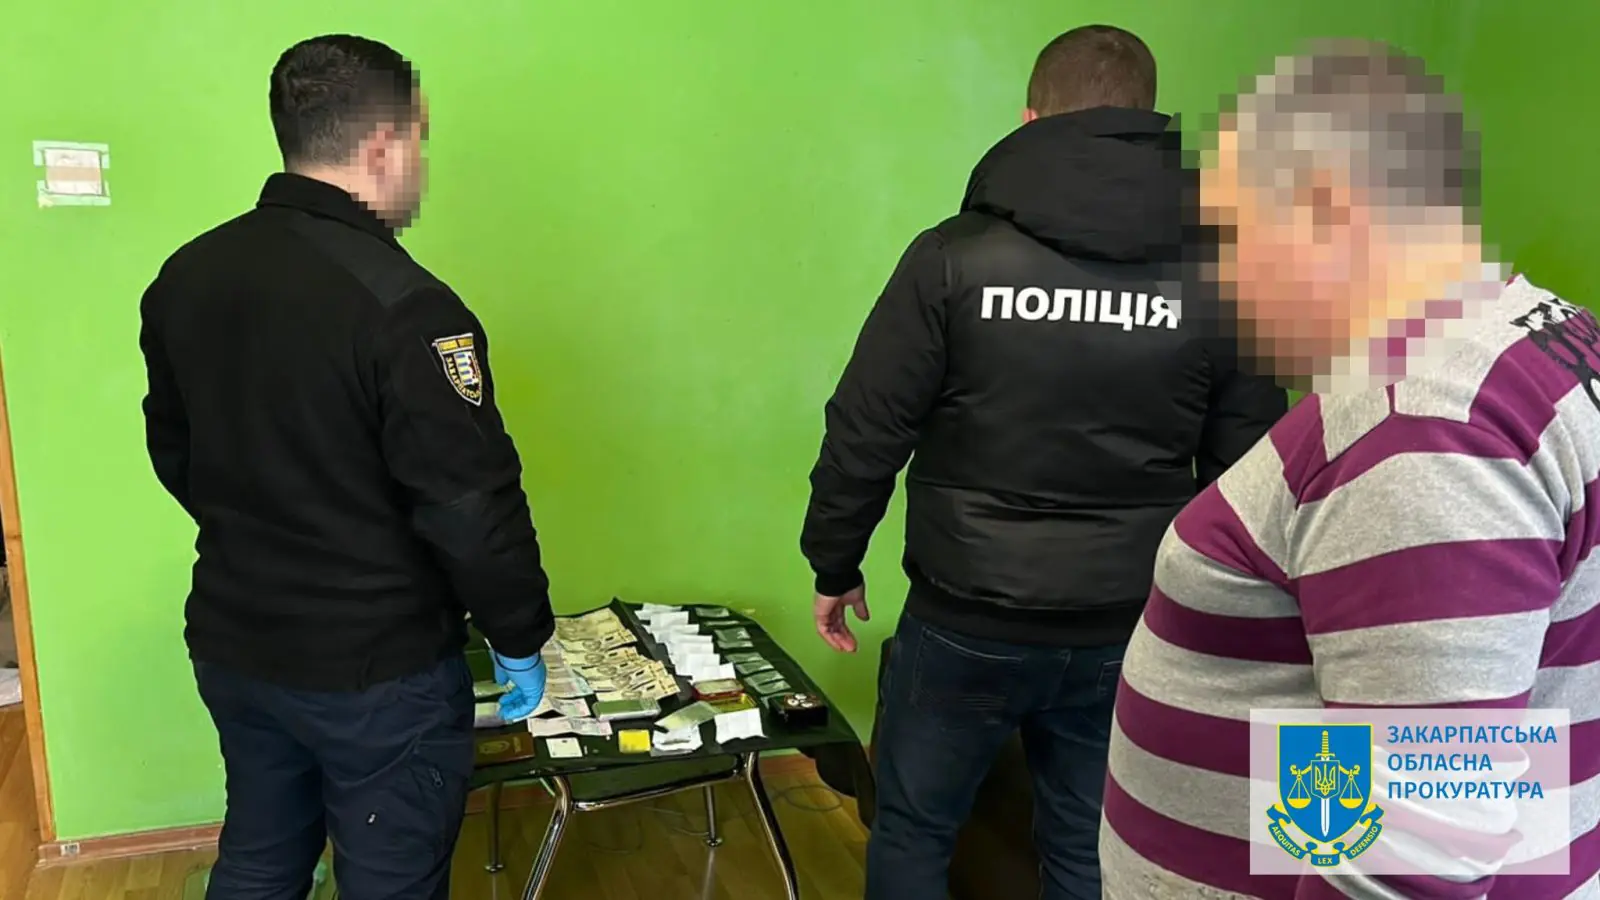  В Ужгороді правоохоронці викрили та ліквідували групу наркодилерів – затримано п’ятьох осіб 2